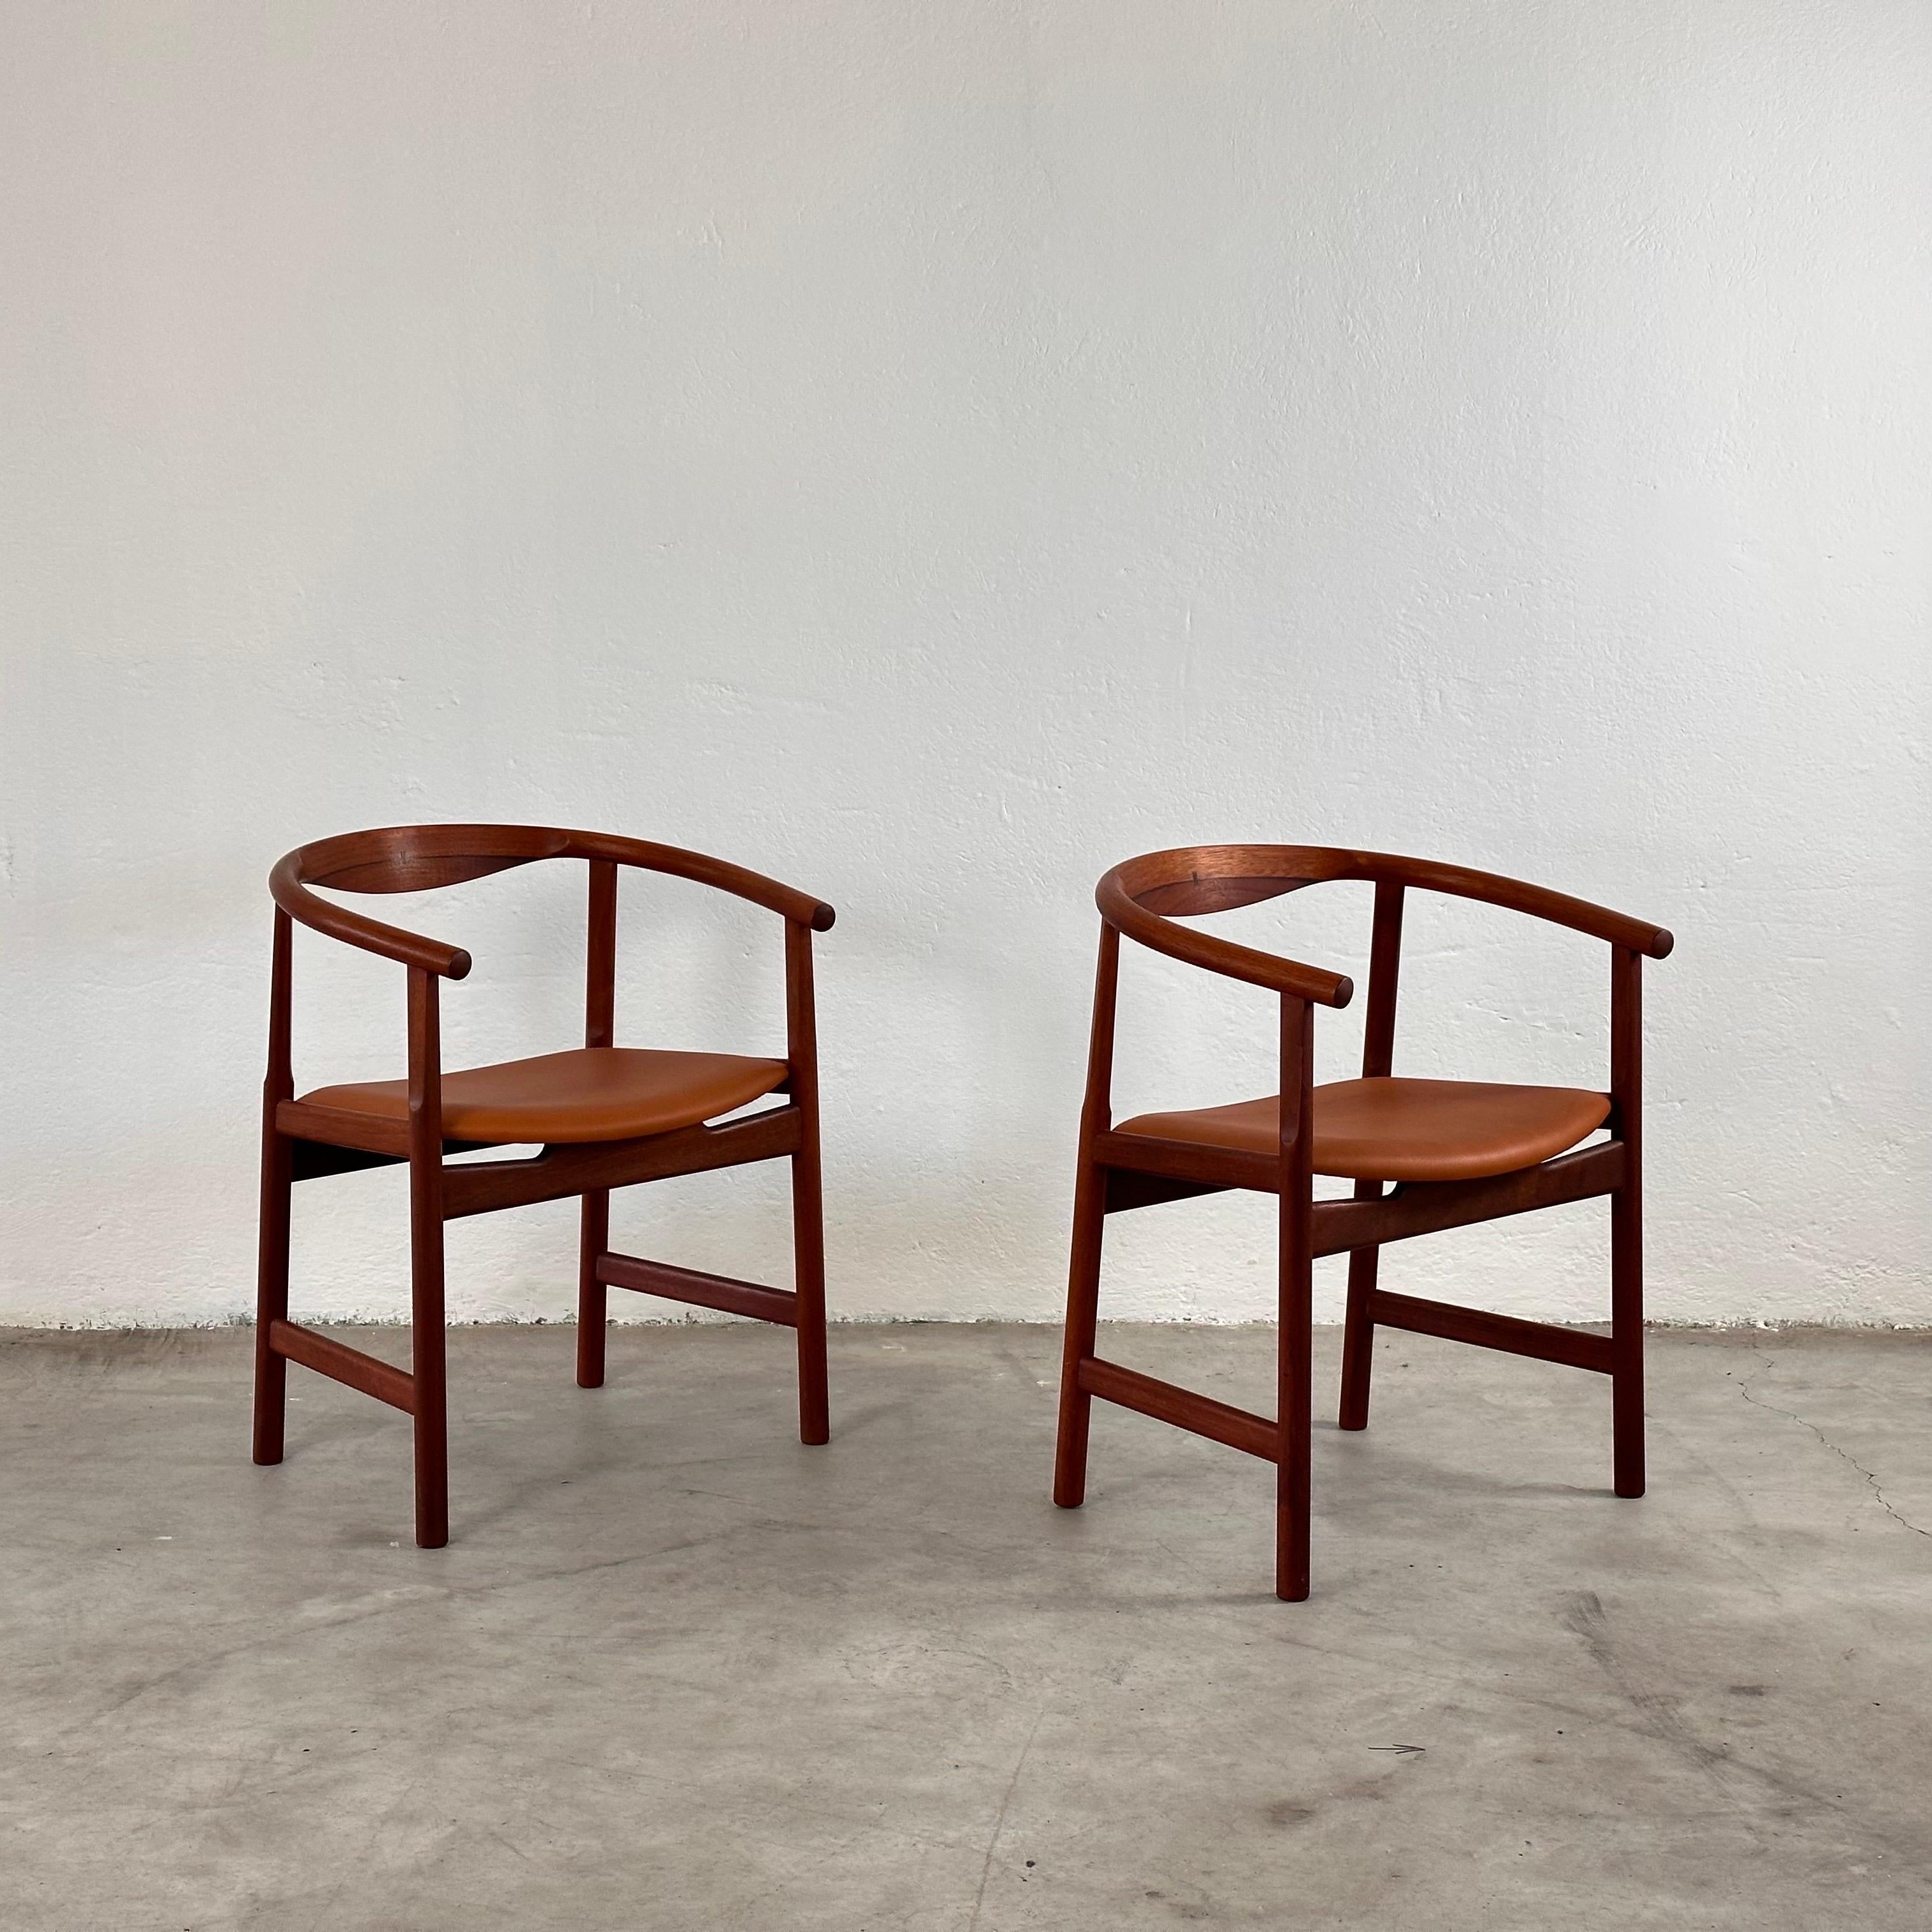 Late 20th Century Hans J. Wegner PP203 Dining Room Chairs for PP Møbler Denmark, 1969 For Sale